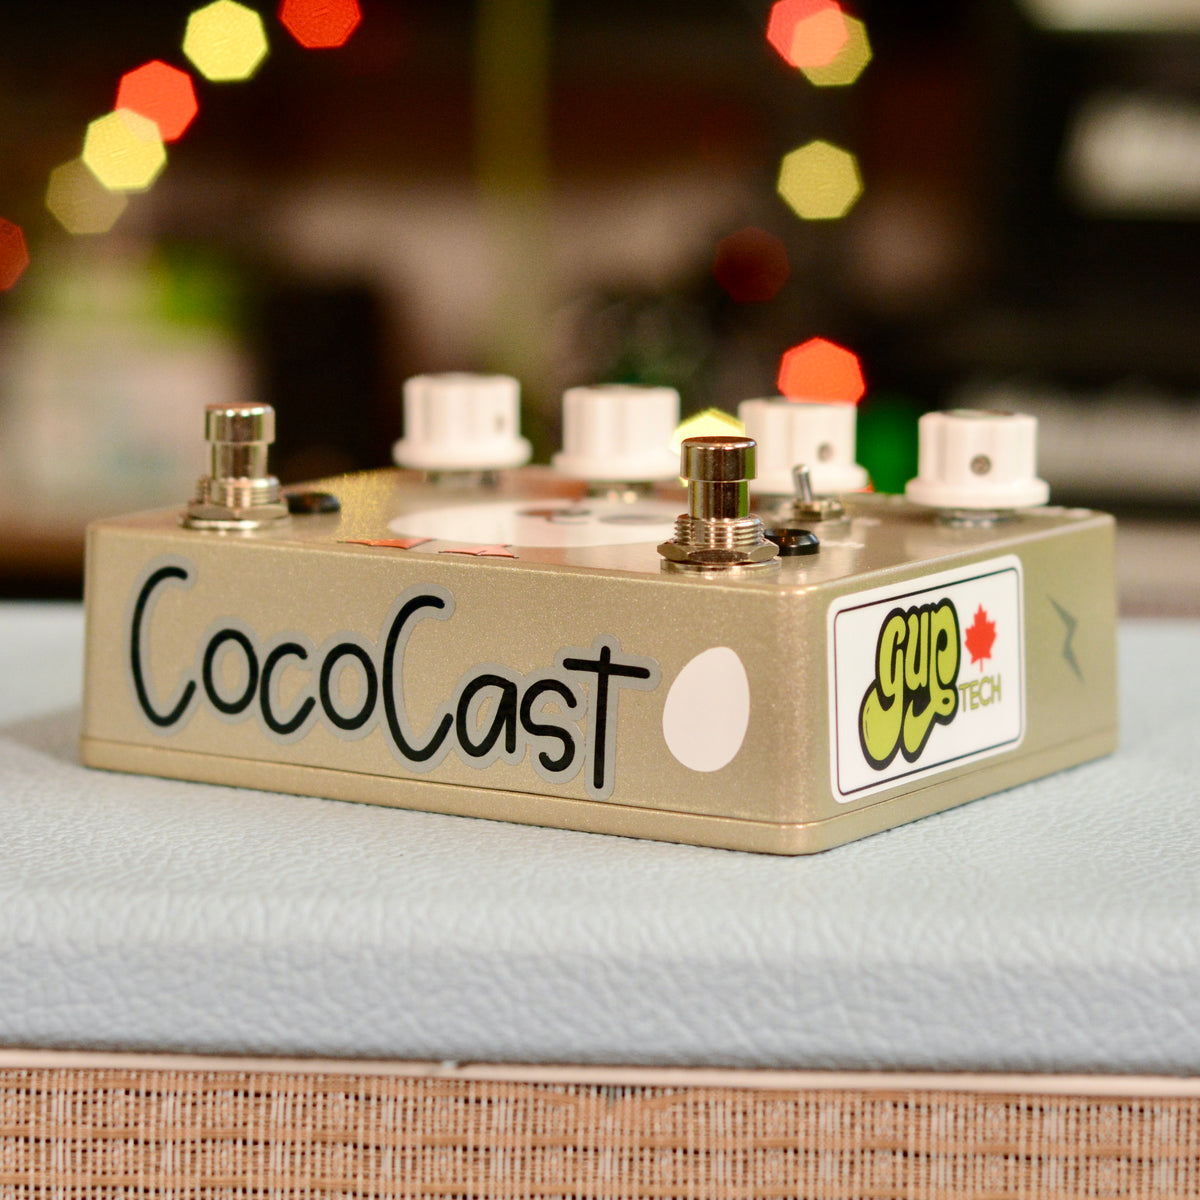 CocoCast - Douche Edition